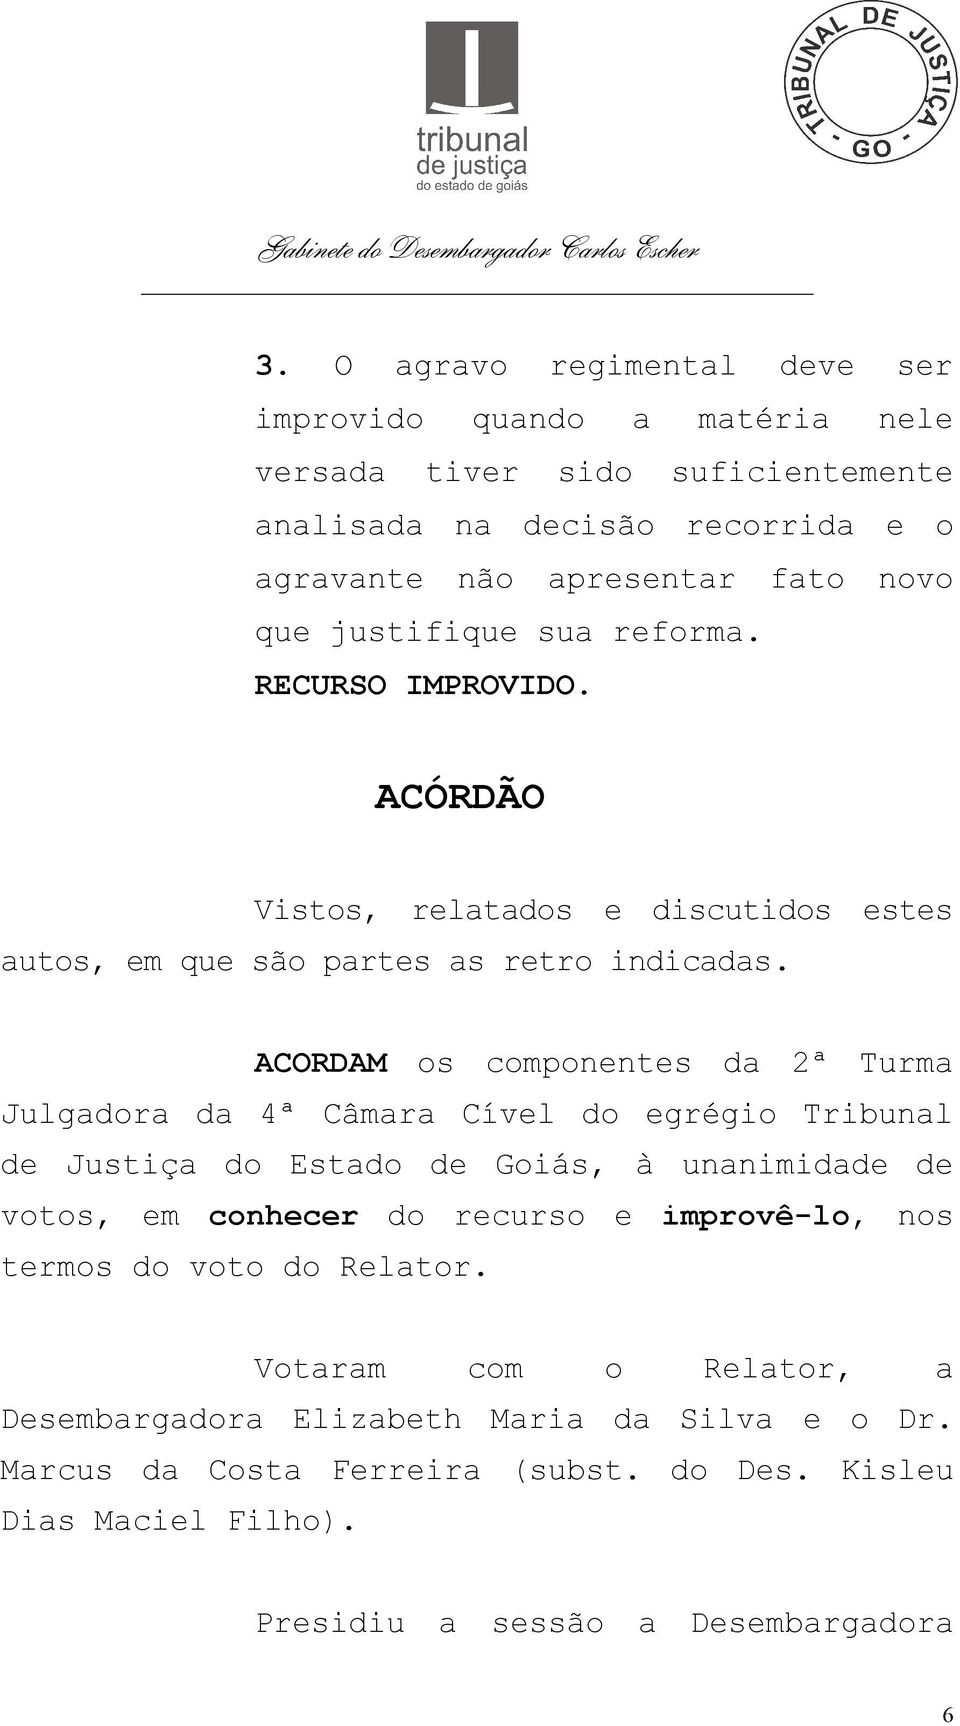 ACORDAM os componentes da 2ª Turma Julgadora da 4ª Câmara Cível do egrégio Tribunal de Justiça do Estado de Goiás, à unanimidade de votos, em conhecer do recurso e